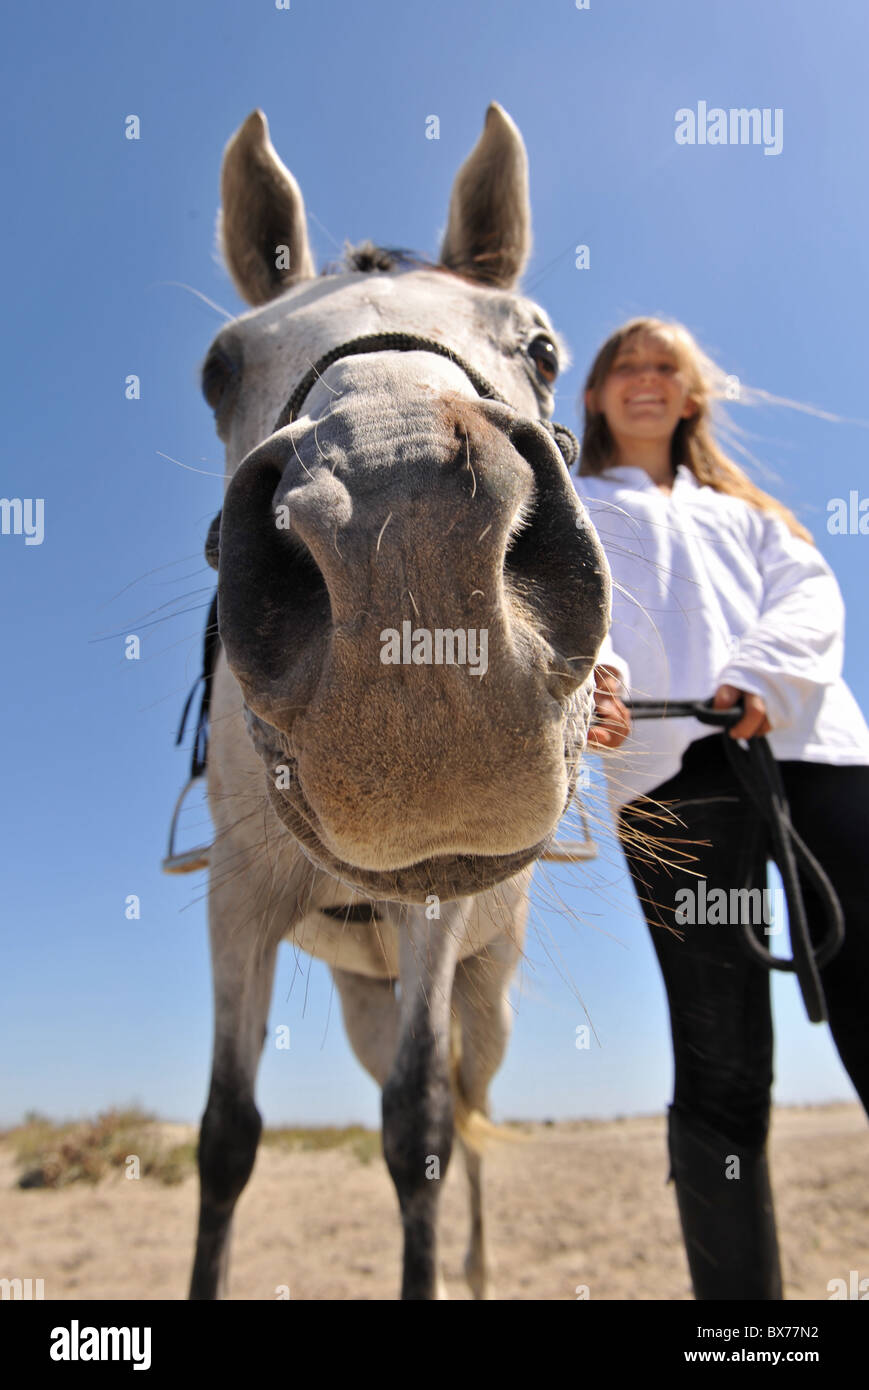 Immagine umoristica di un sorridente adolescente e il suo cavallo arabo, focus sul naso Foto Stock